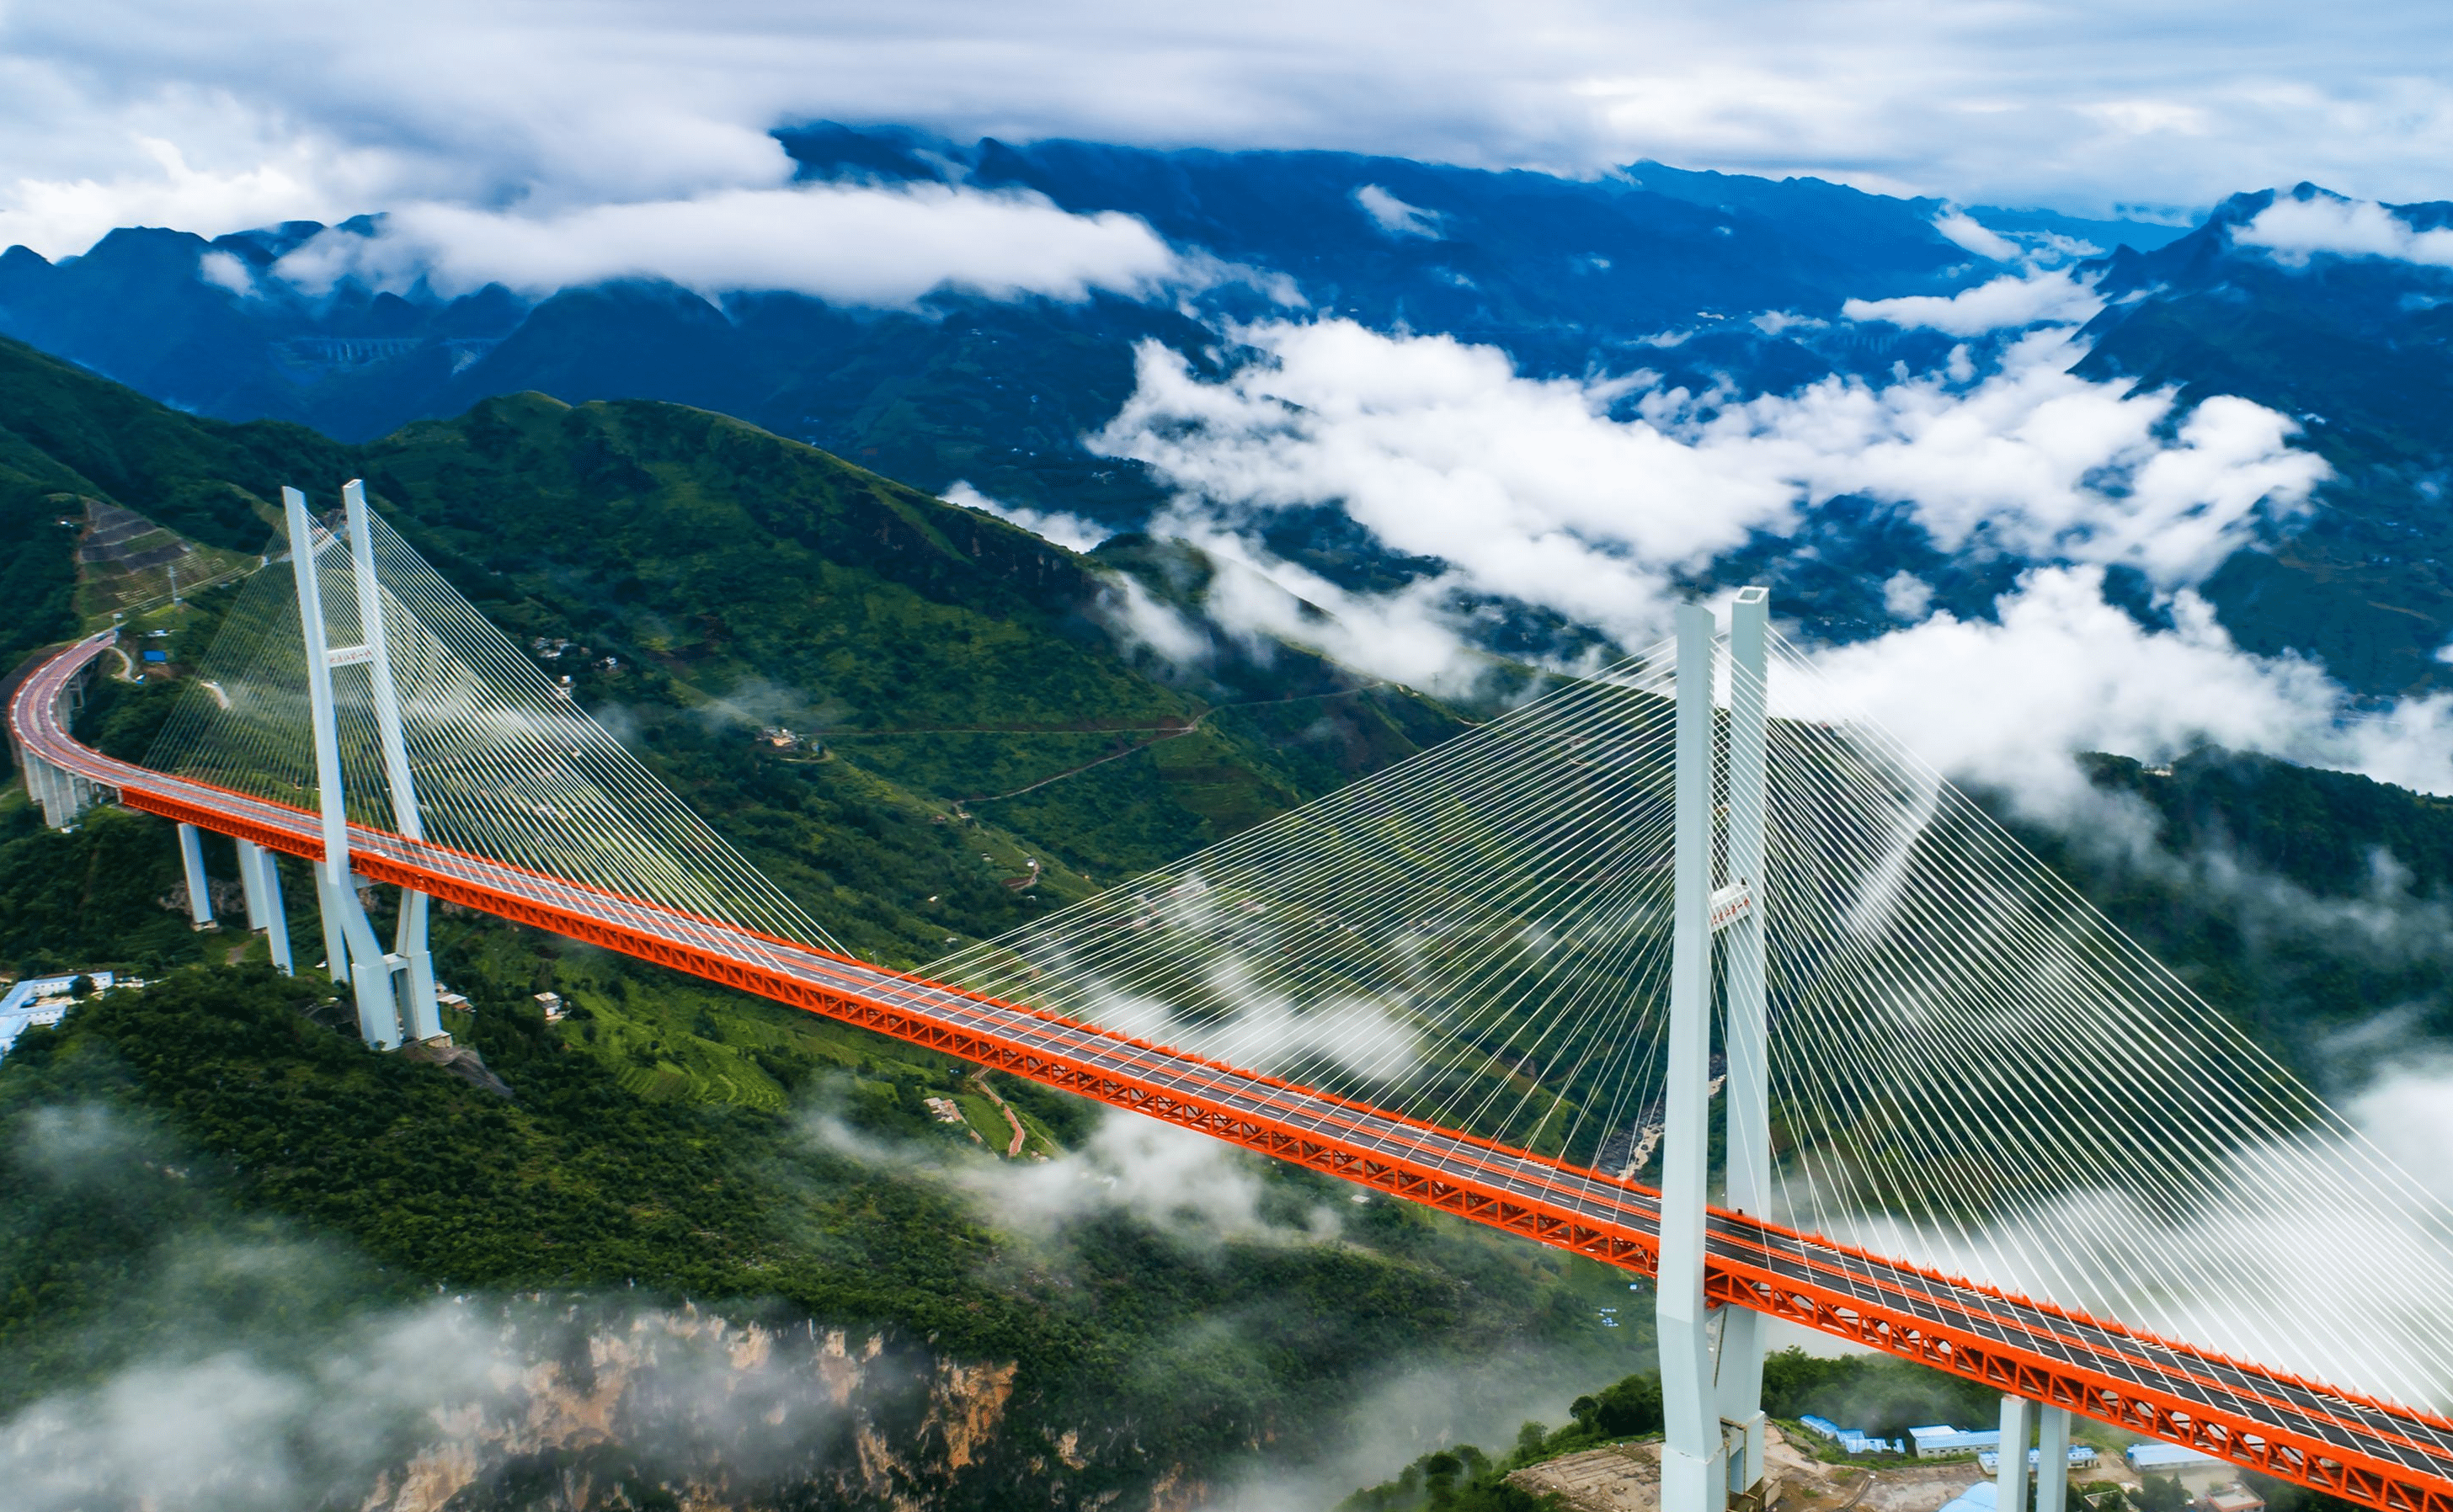 而北盘江大桥穿越了众多山脉,此桥北起贵州六盘水地点,南至云南曲靖